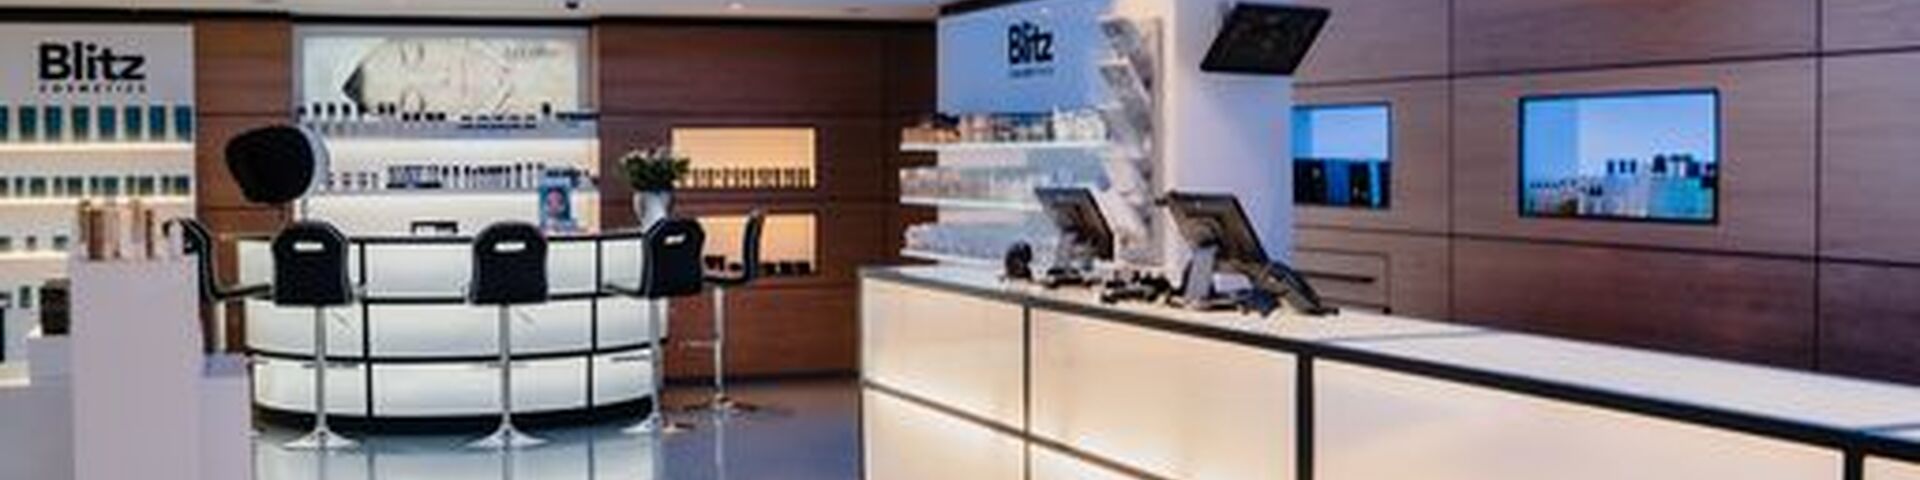 Blitz Skincare gaat een stapje verder dan de reguliere schoonheidsspecialiste